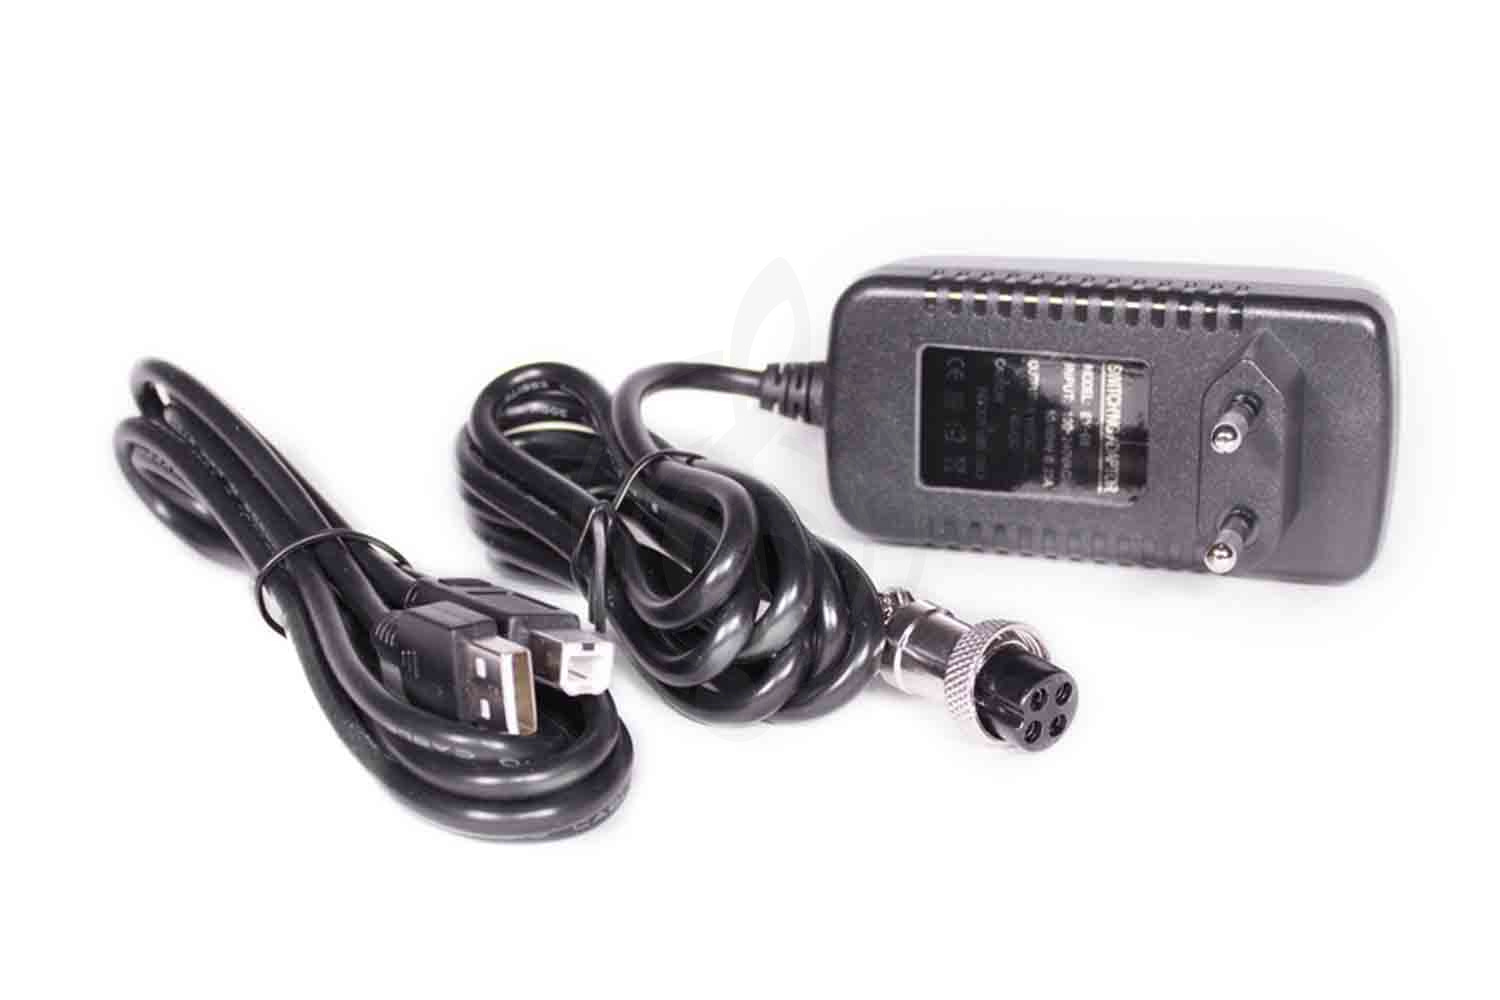 Аналоговый микшер Аналоговый микшер GrandVox GrandVox MC-04X USB Микшерный пульт аналоговый  MC-04X - фото 6